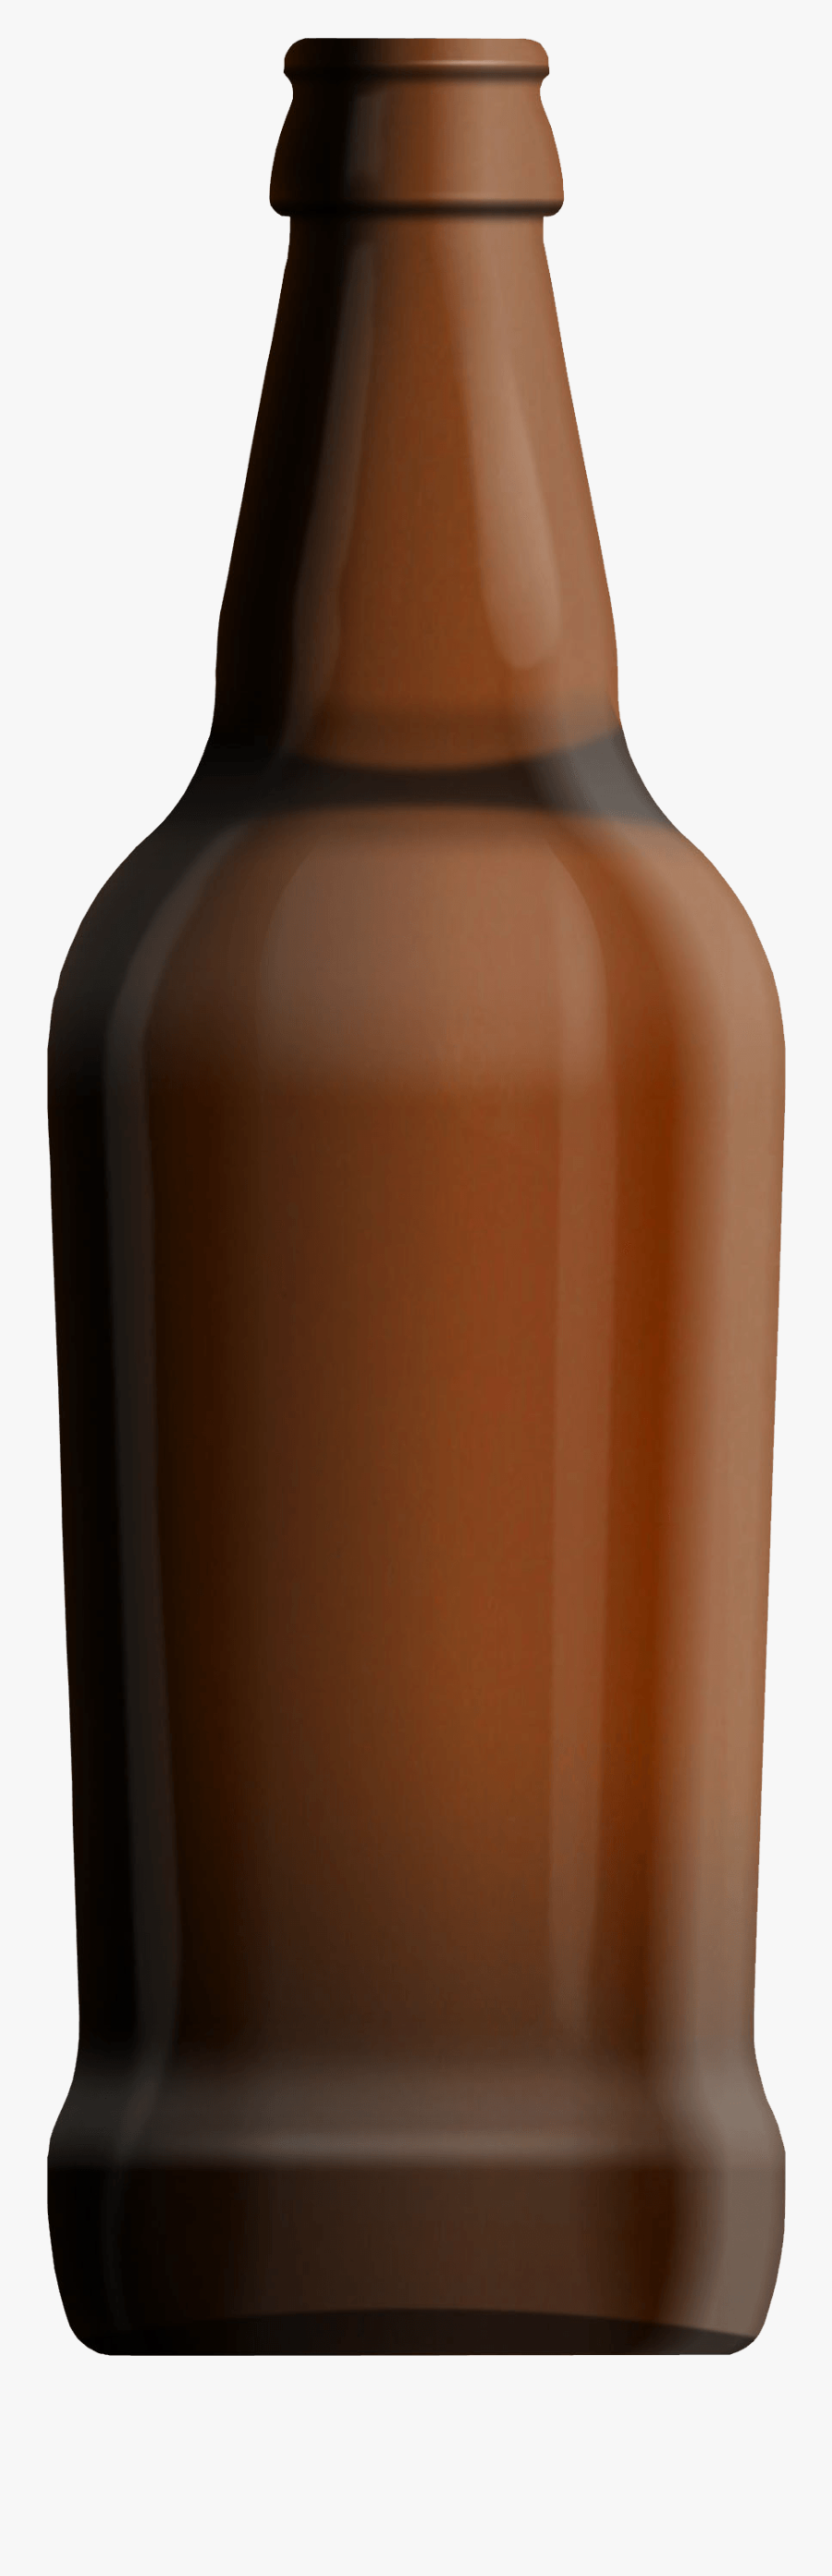 Beer Bottle - Beer Glass Bottle Png, Transparent Clipart